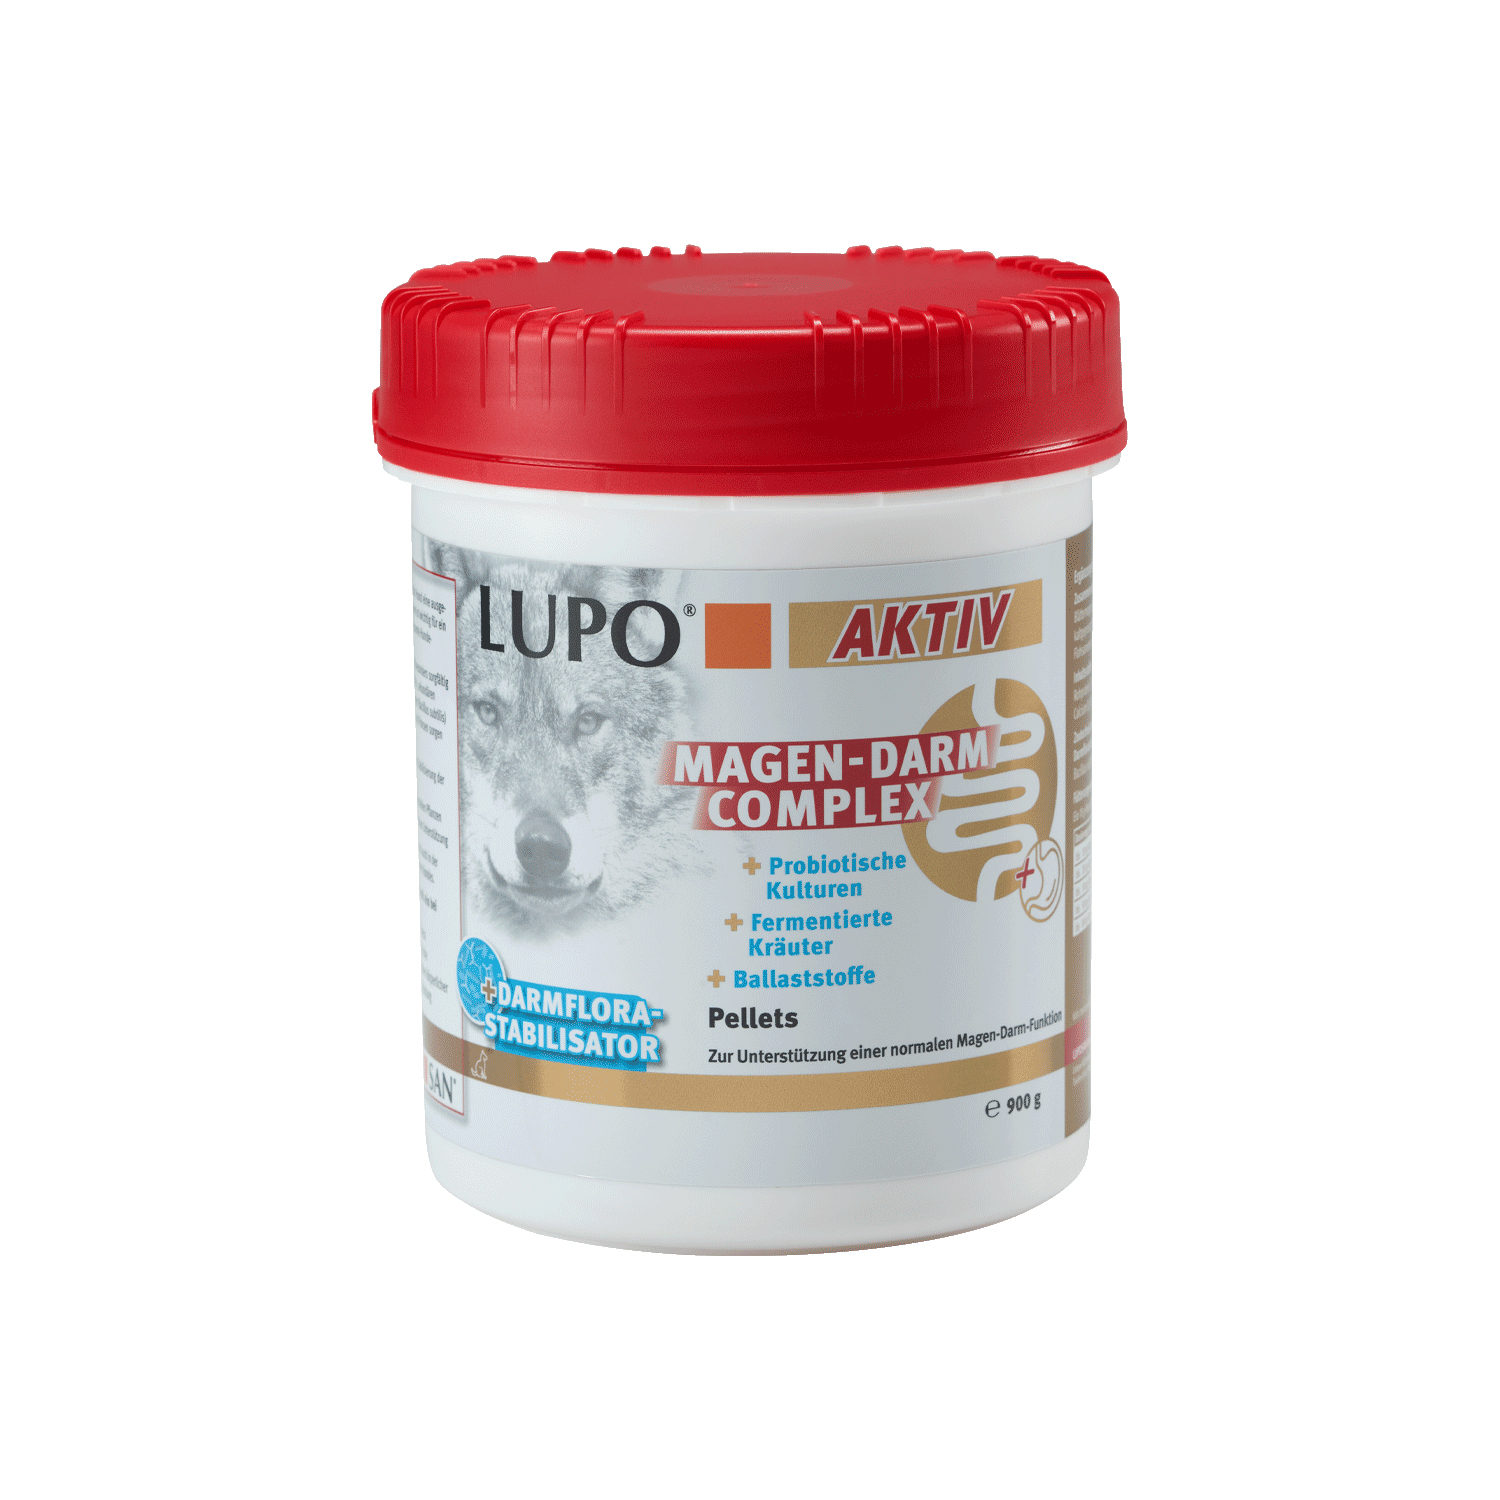 Lupo Aktiv Magen-Darm Complex - 400 g von Luposan